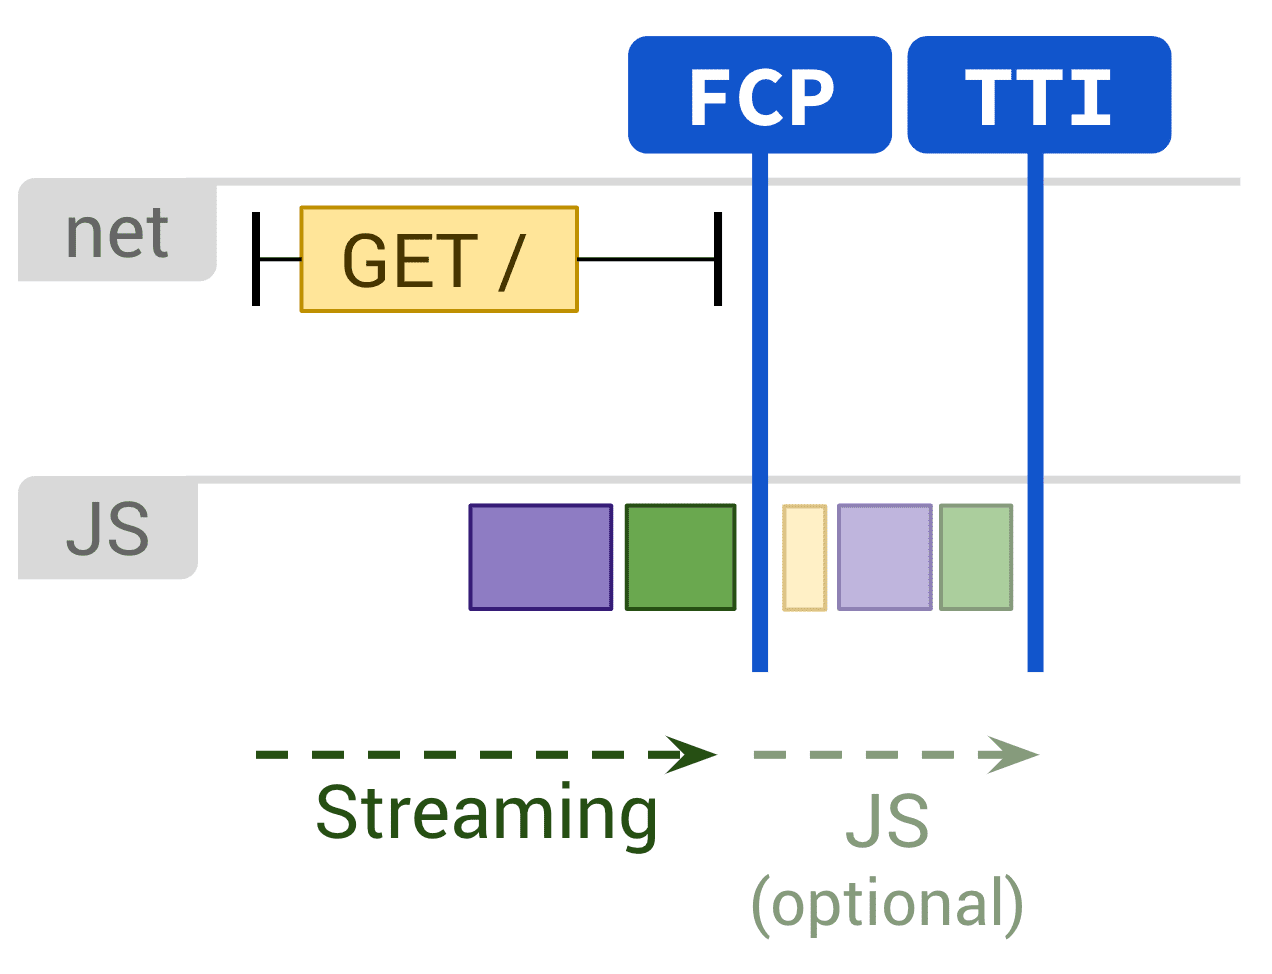 Diagram przedstawiający renderowanie statyczne i opcjonalne wykonanie kodu JS wpływającego na FCP i TI.